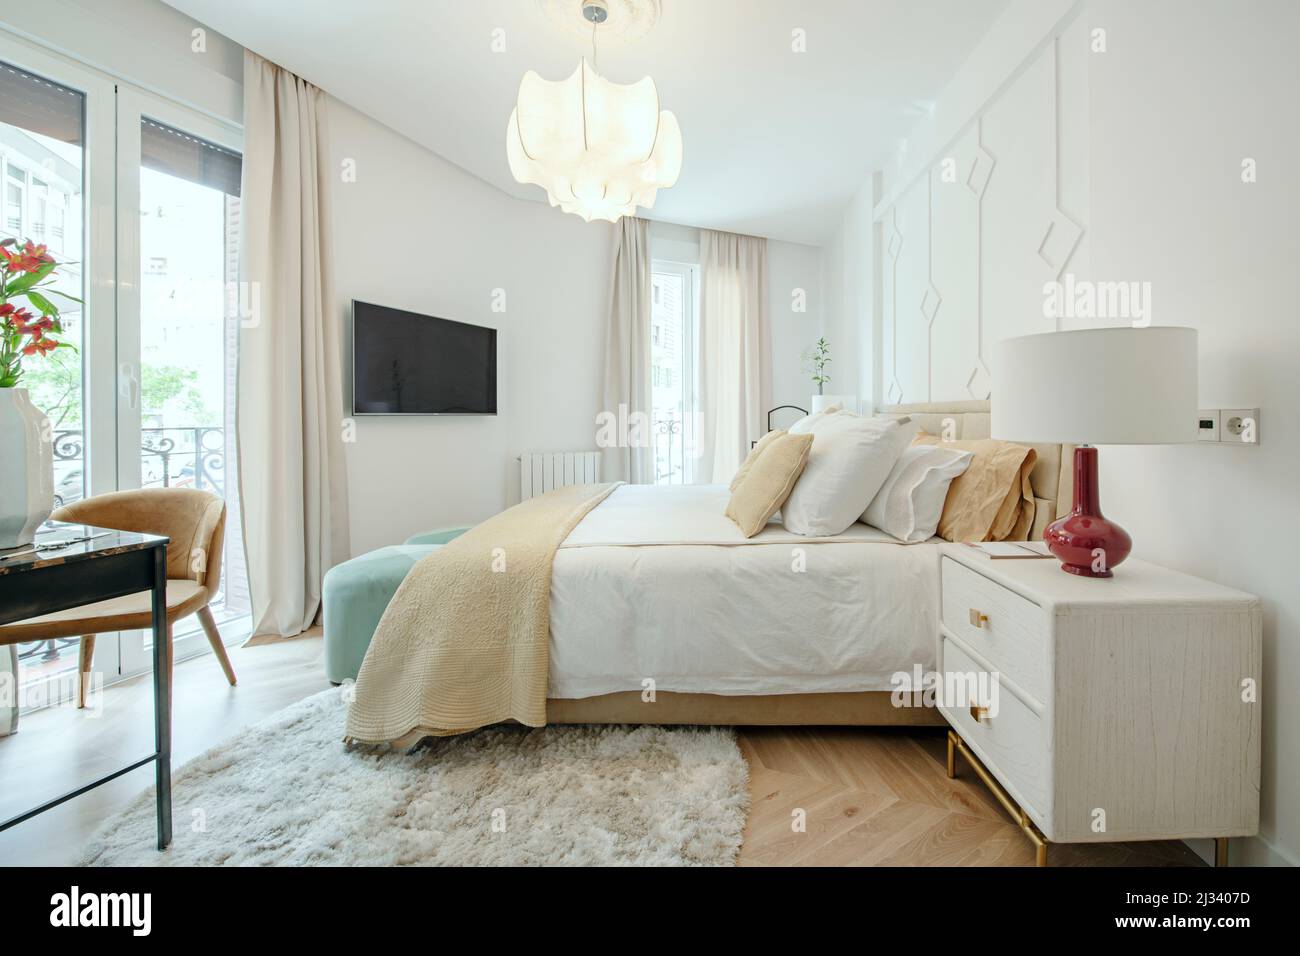 Camera da letto con un letto matrimoniale con cuscini di colore chiaro, comodini in legno chiaro e diversi balconi che si affacciano sulla strada Foto Stock